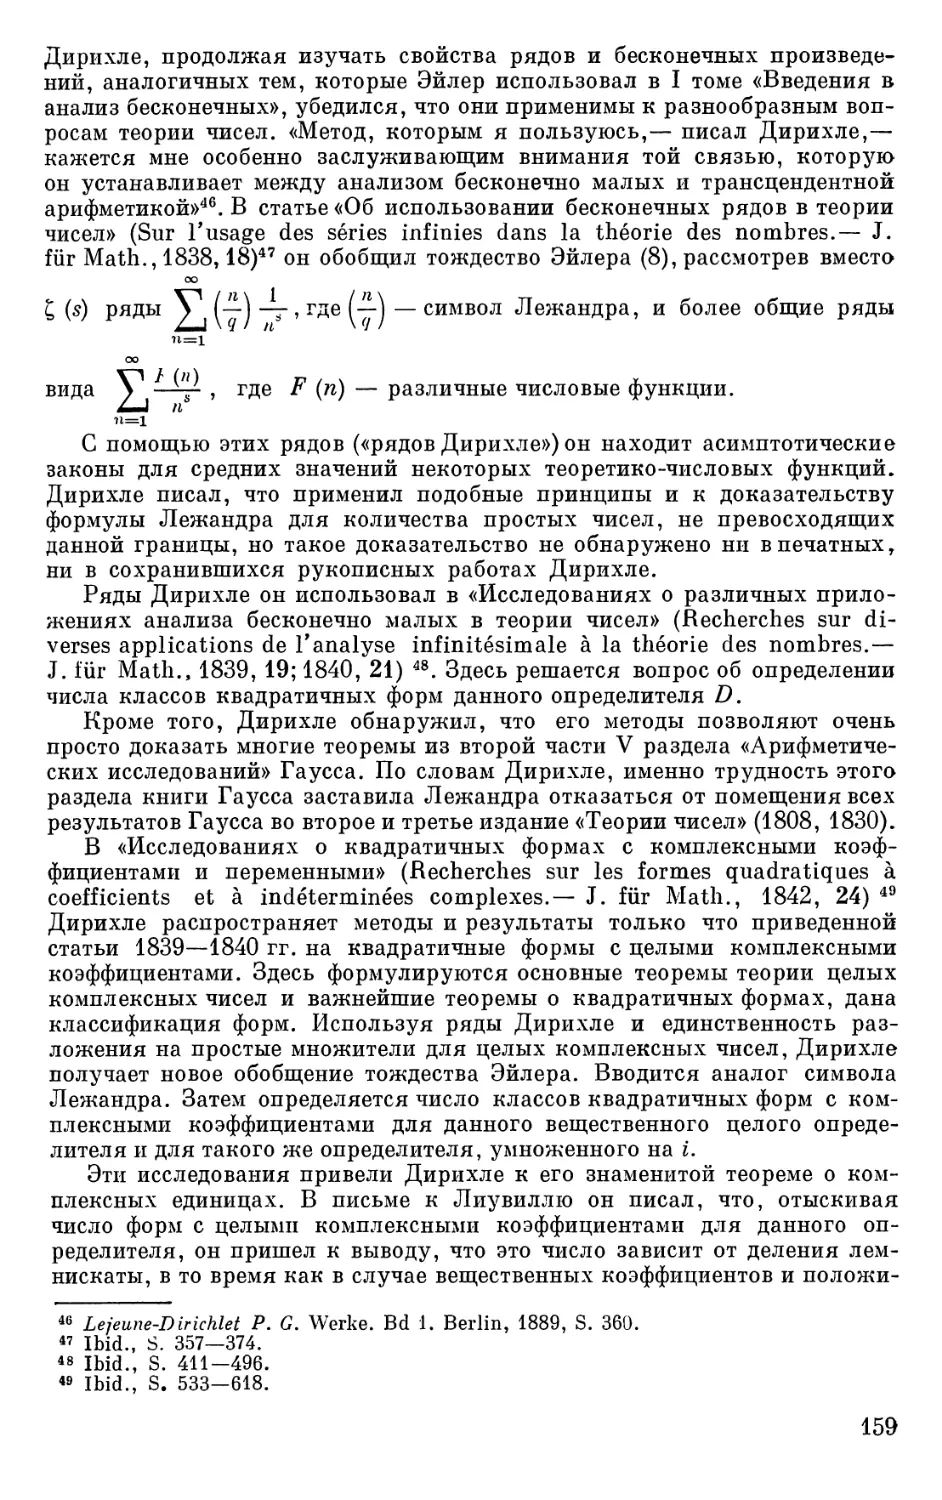 П. Л. Чебышев и теория распределения простых чисел